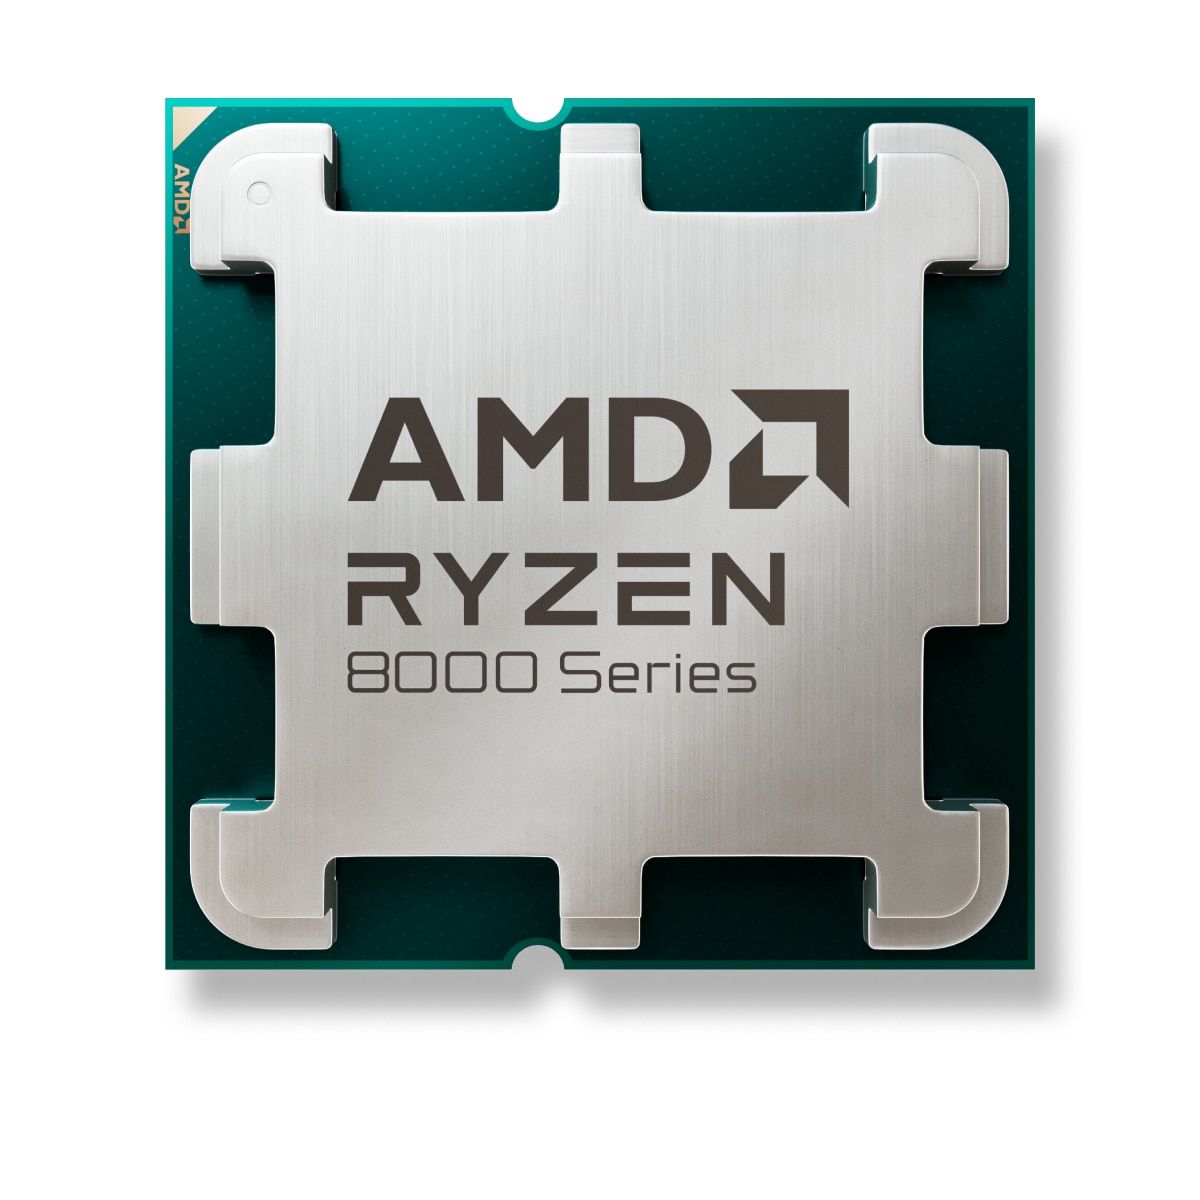 AMD ประกาศวางจำหน่ายโปรเซสเซอร์ AMD Ryzen 7 8700F และ AMD Ryzen 5 8400F เสนอประสิทธิภาพด้านการประหยัดพลังงานและการประมวลผลด้าน AI